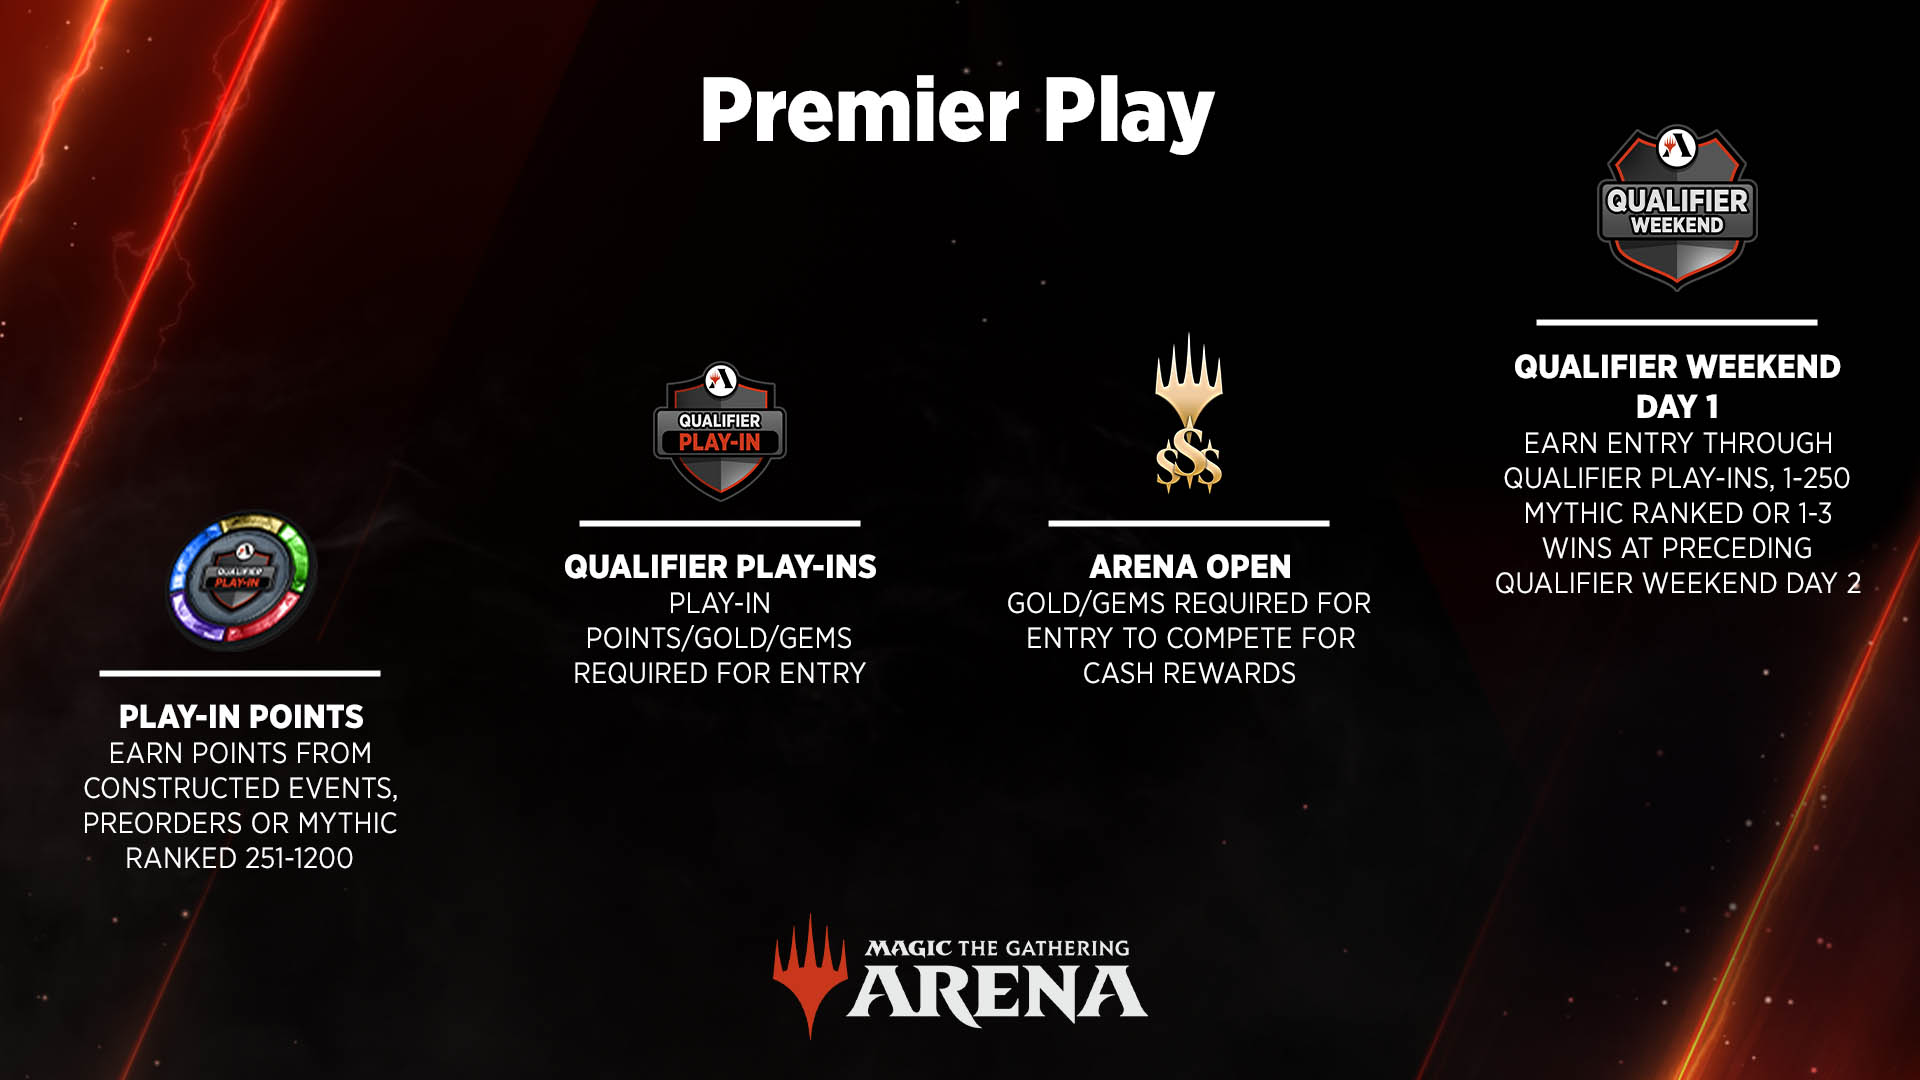 Percorso eventi di gioco Premier, punti Play-In per Play-In Qualifier e Arena Open, culminanti nell’evento Fine settimana Qualifier - Giorno 1